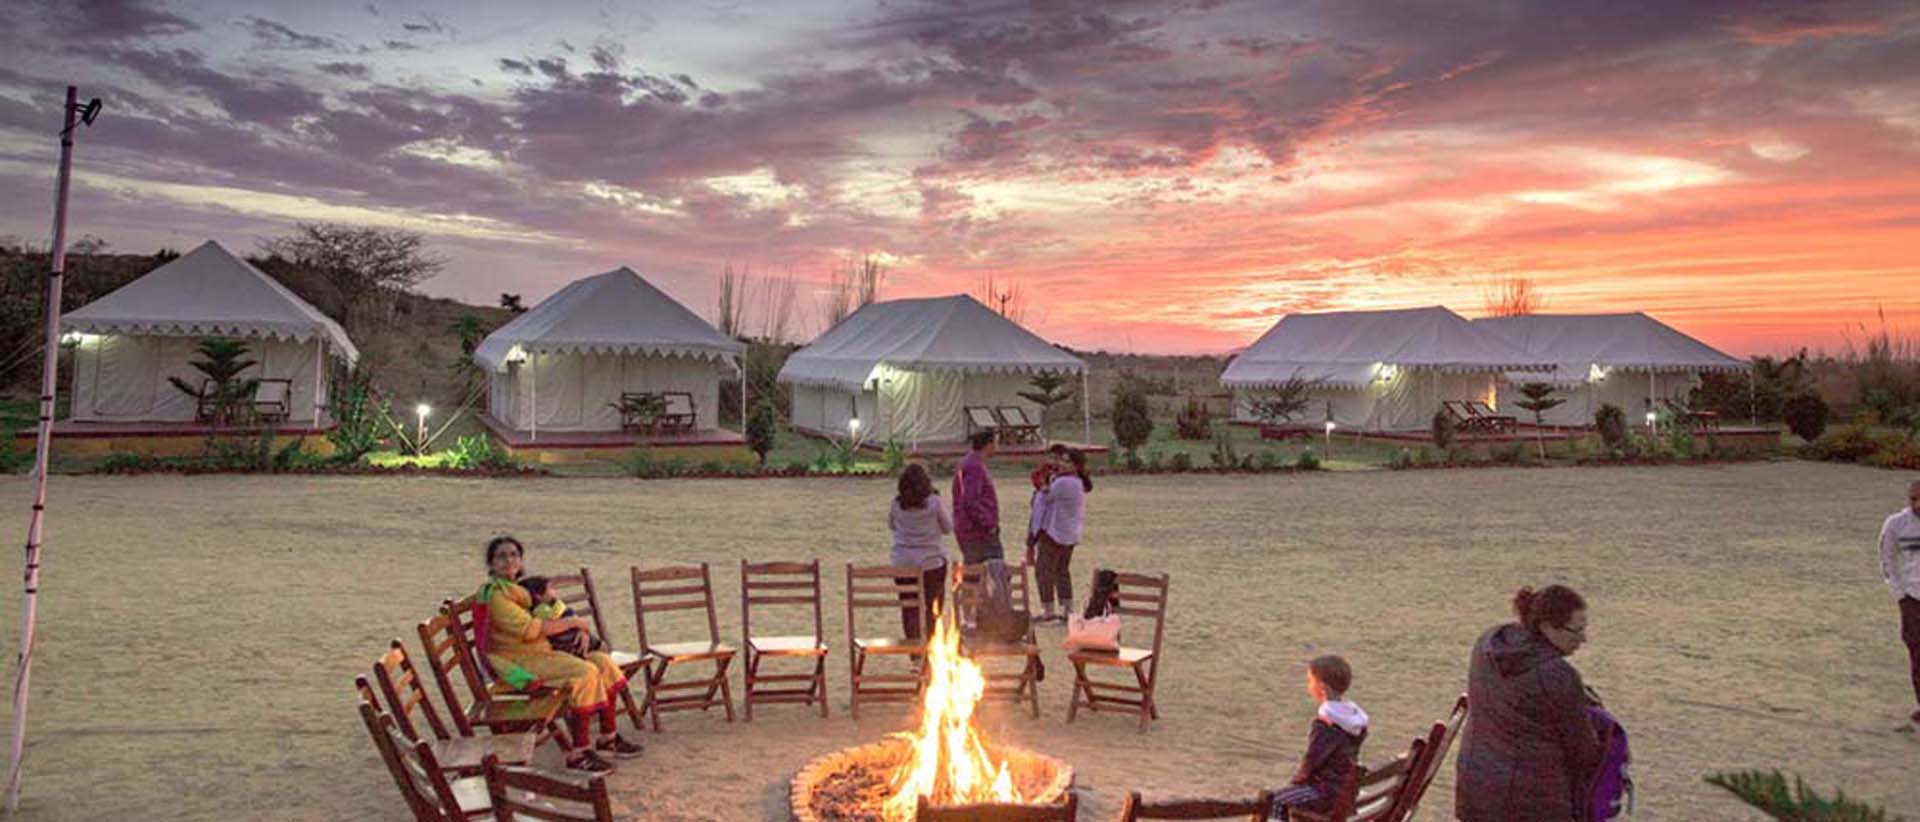 camp pushkar,desert camp,tent pushkar,fair accomodation